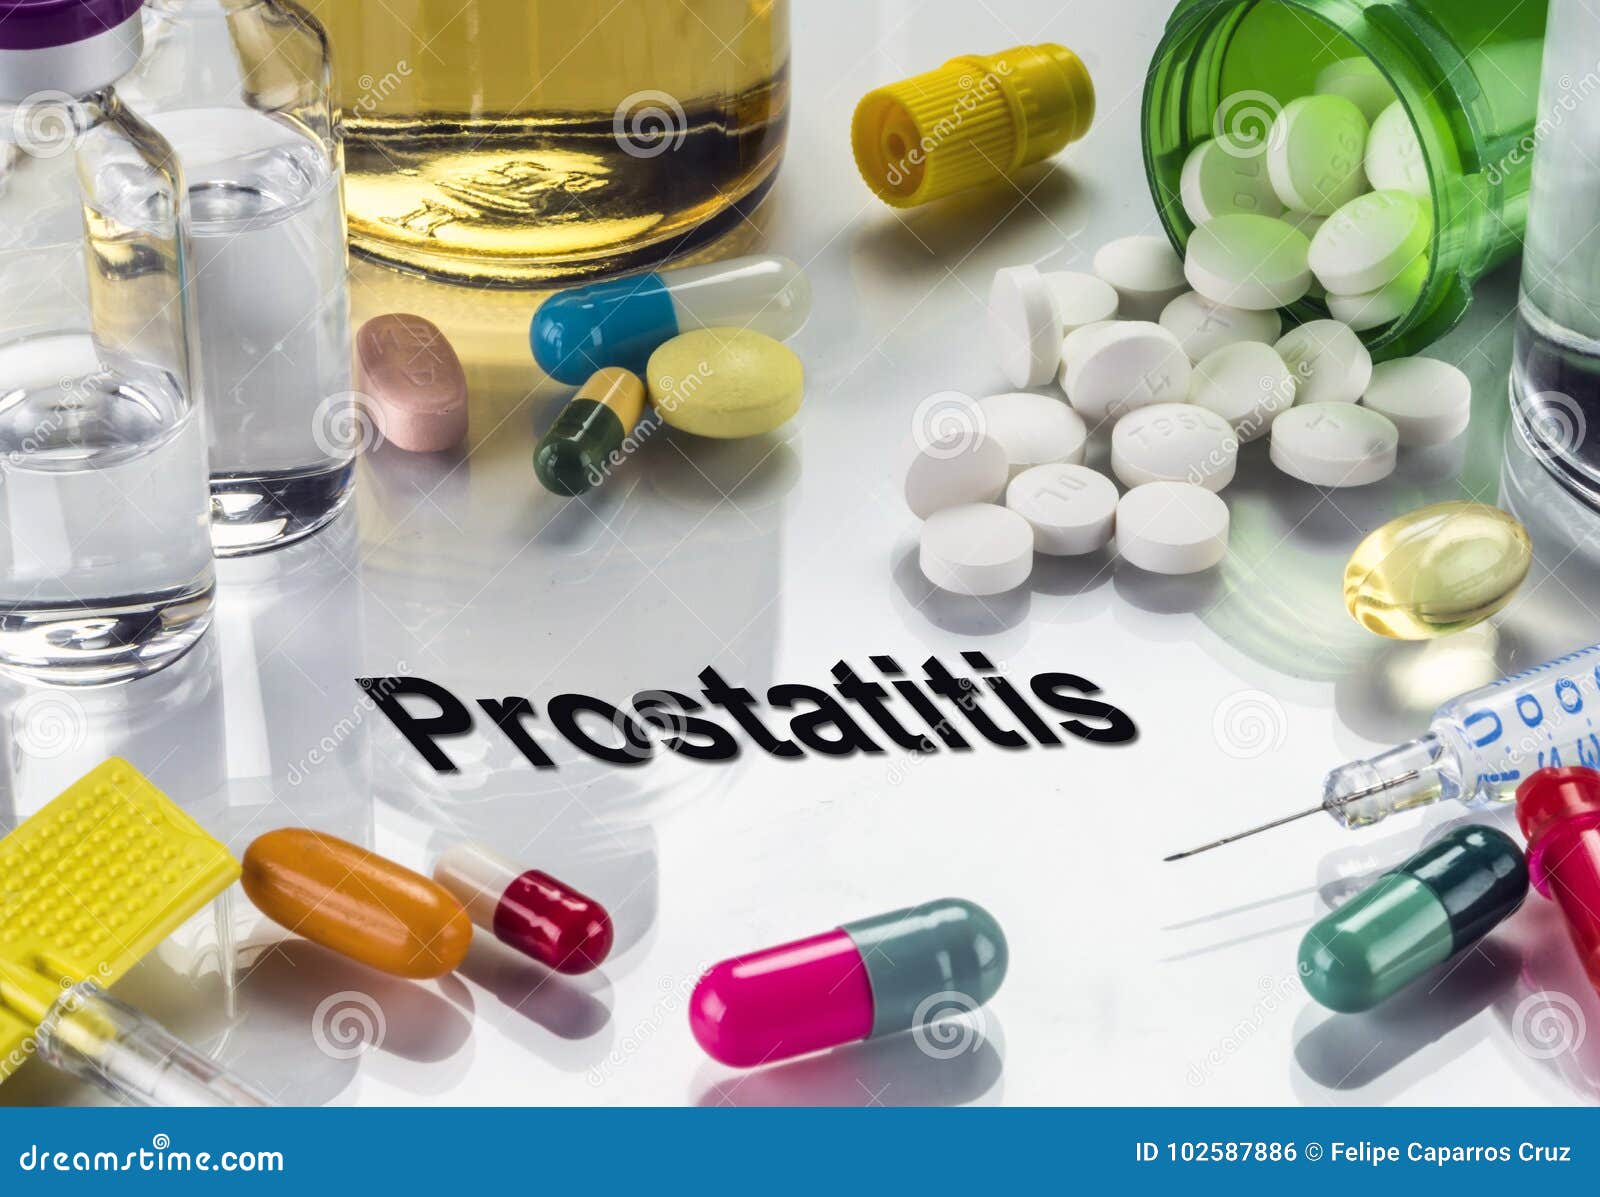 toblets for prostatitis